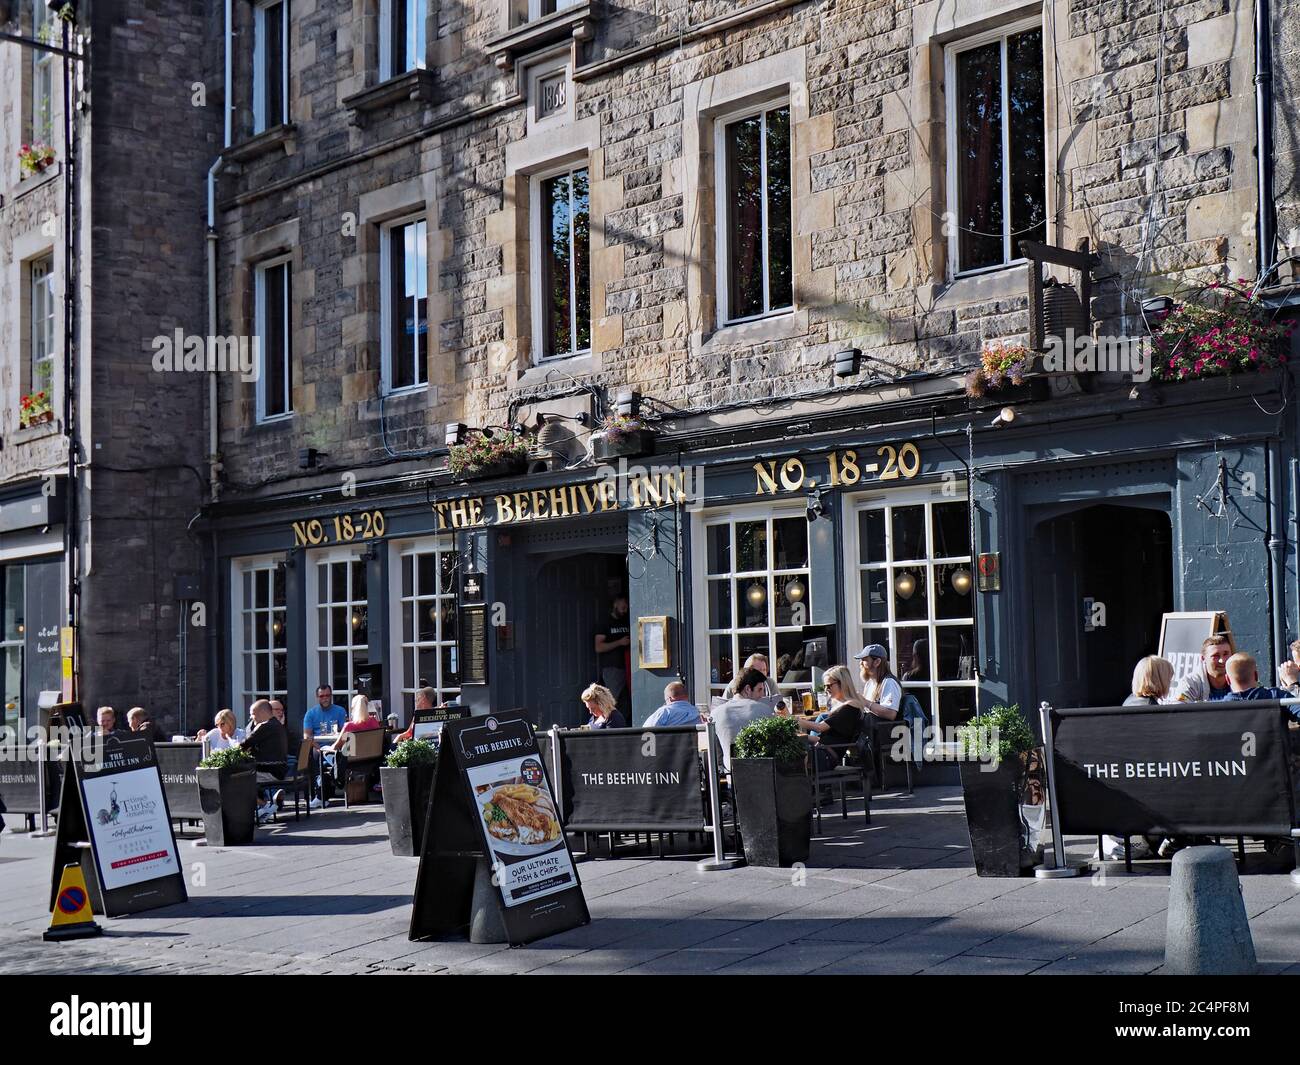 Edimburgo, Scozia - 20 settembre 2016: Grassmarket Square, con aree salotto all'aperto di ristoranti in vecchi edifici in pietra. Foto Stock